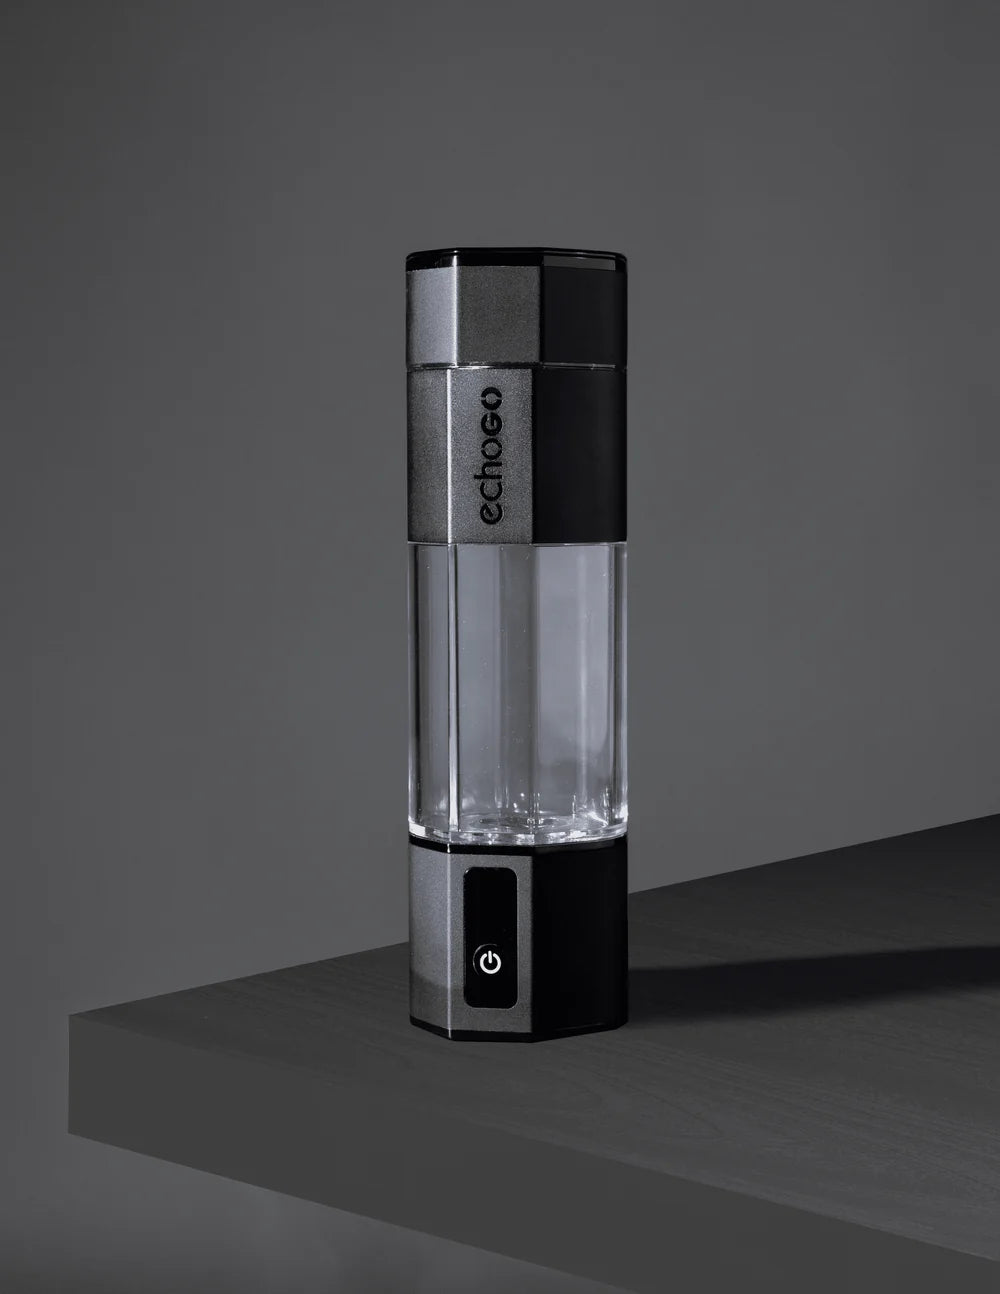 Echo Go+ Hydrogen Water Bottle | Blue Metallic